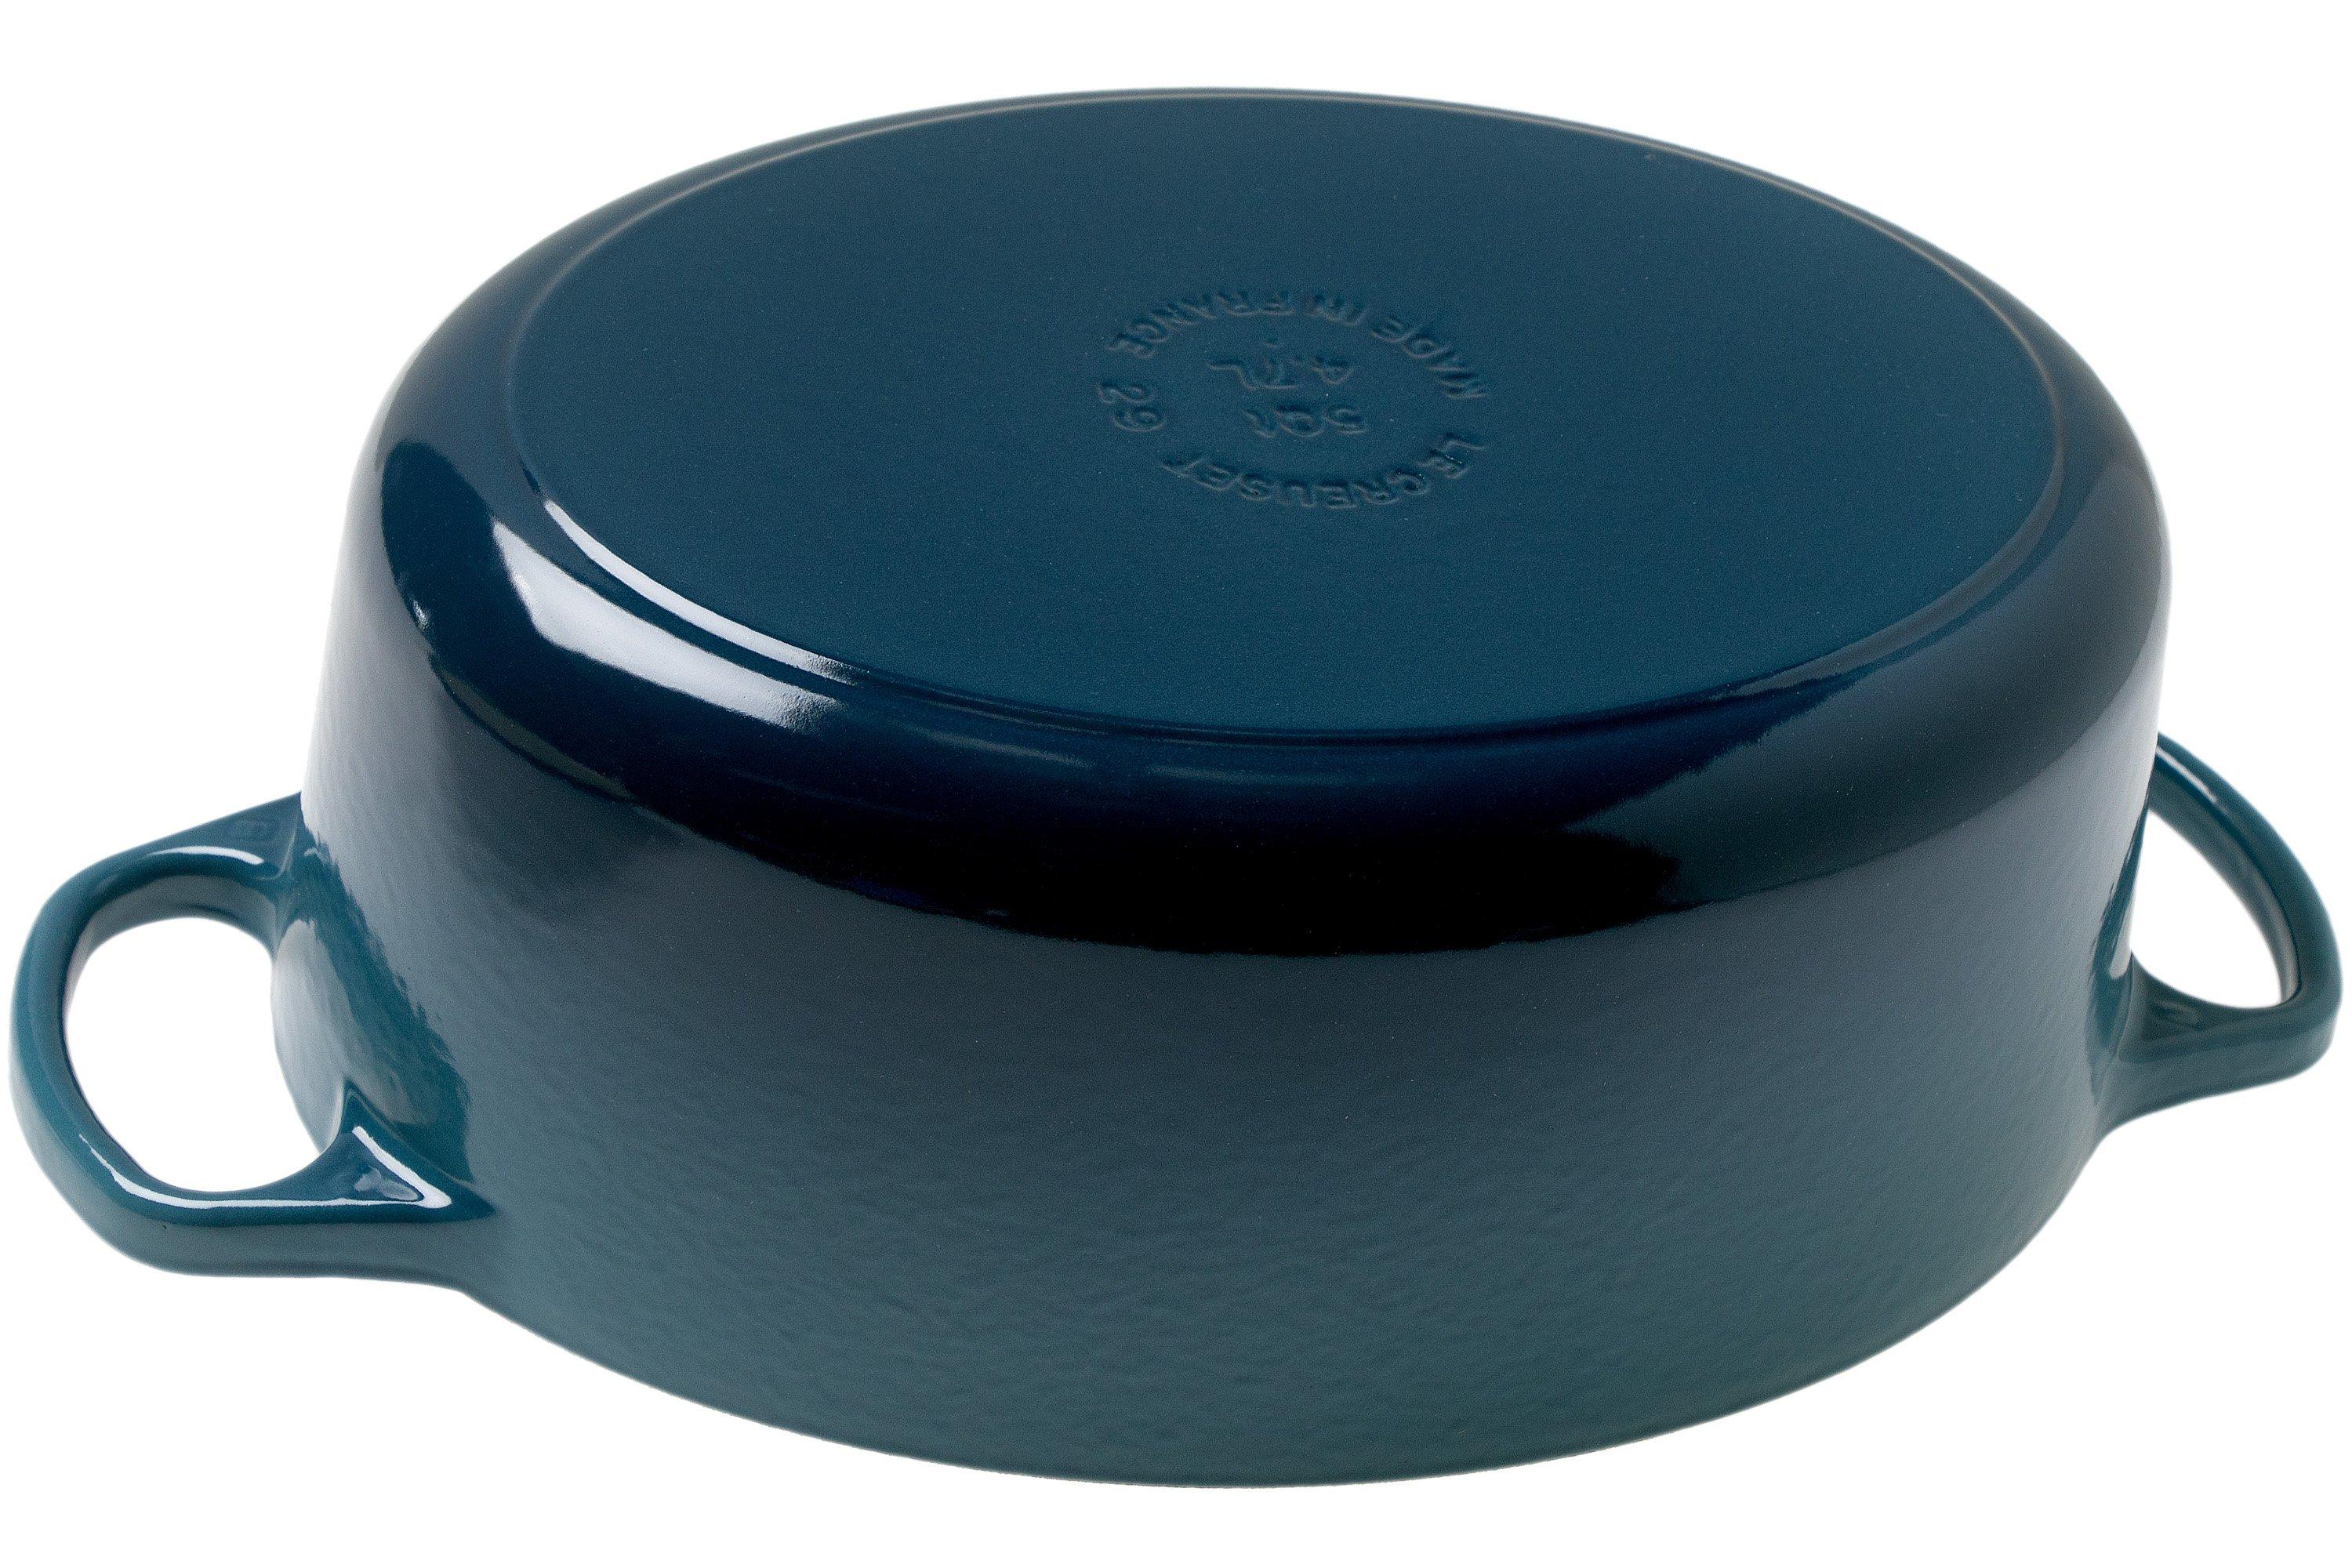 Le Creuset casserole-cocotte oval 27cm, 4,1 l blue